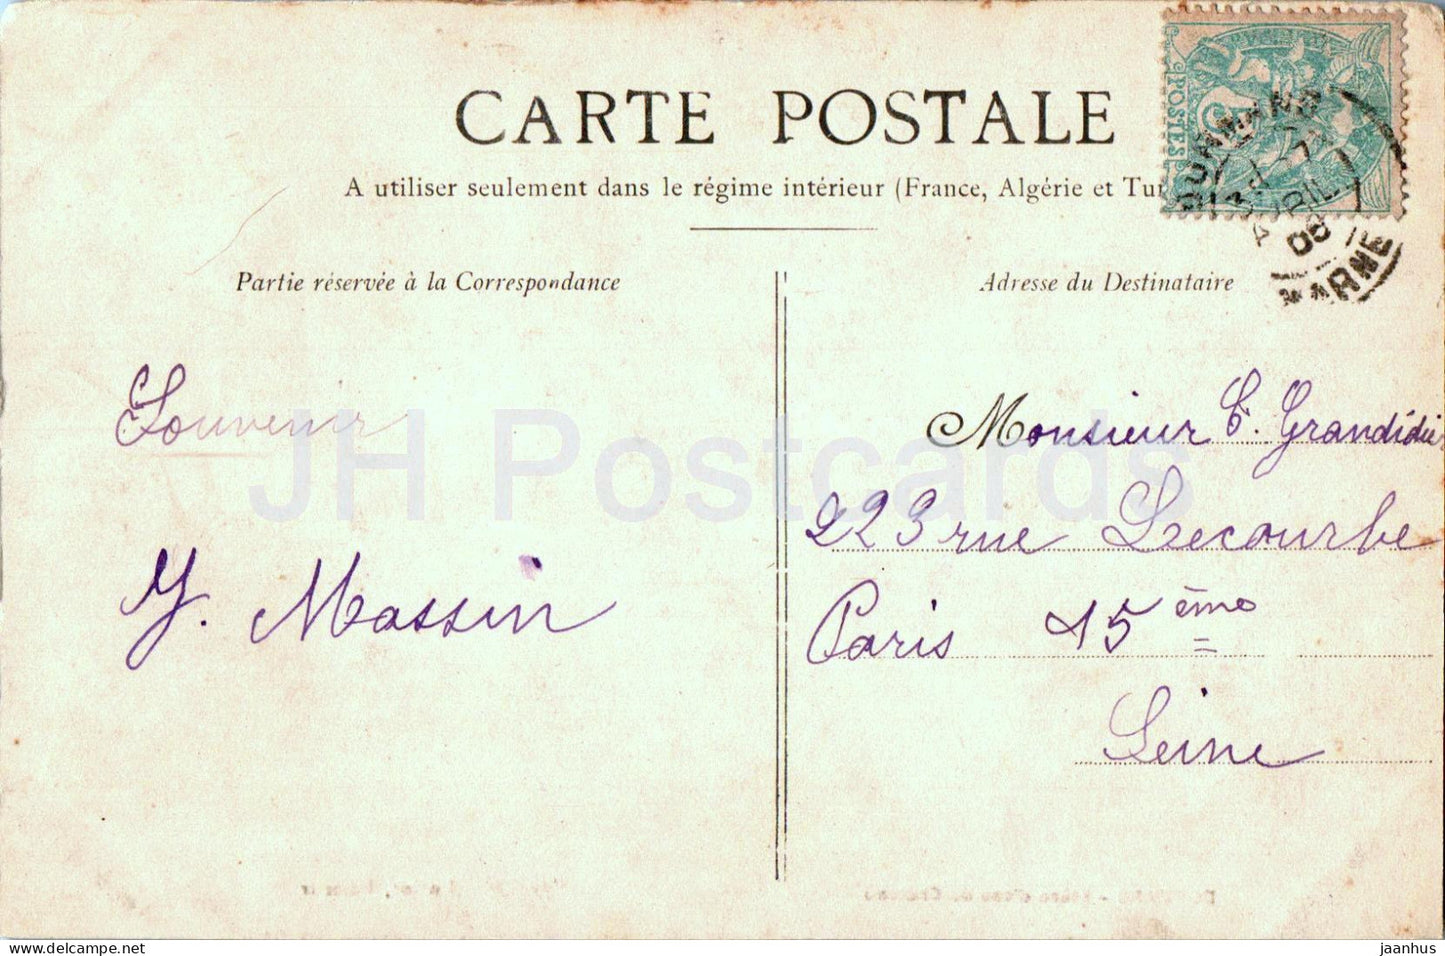 Dormans - Plece d'eau du Chateau - alte Postkarte - Frankreich - gebraucht 